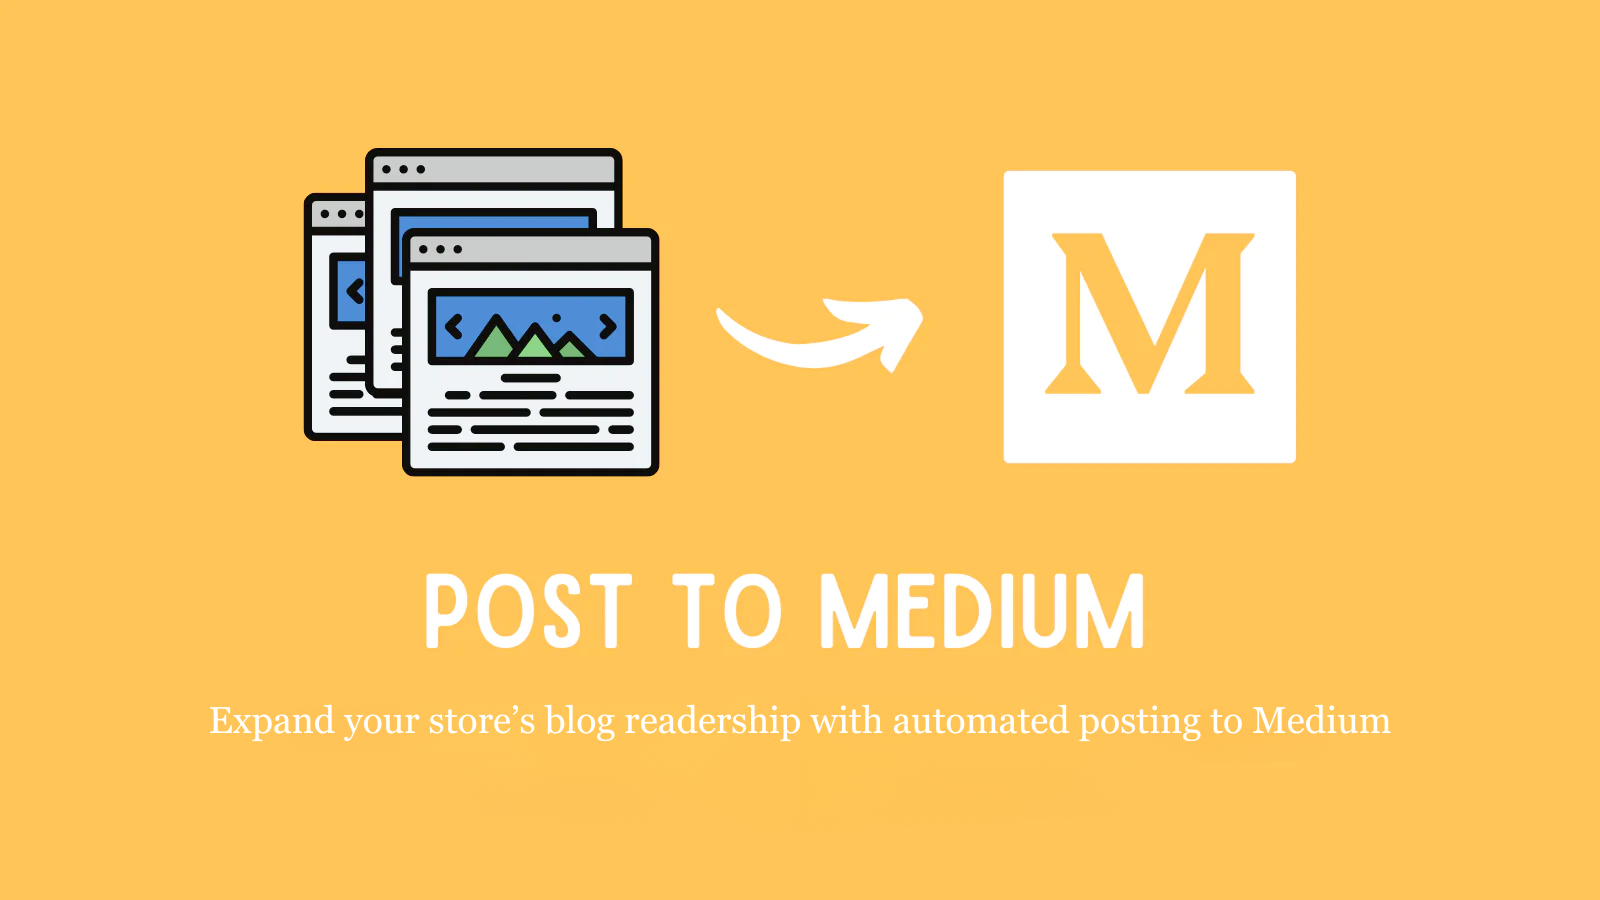 Een eenvoudige manier om uw bloglezerspubliek uit te breiden met Medium posts